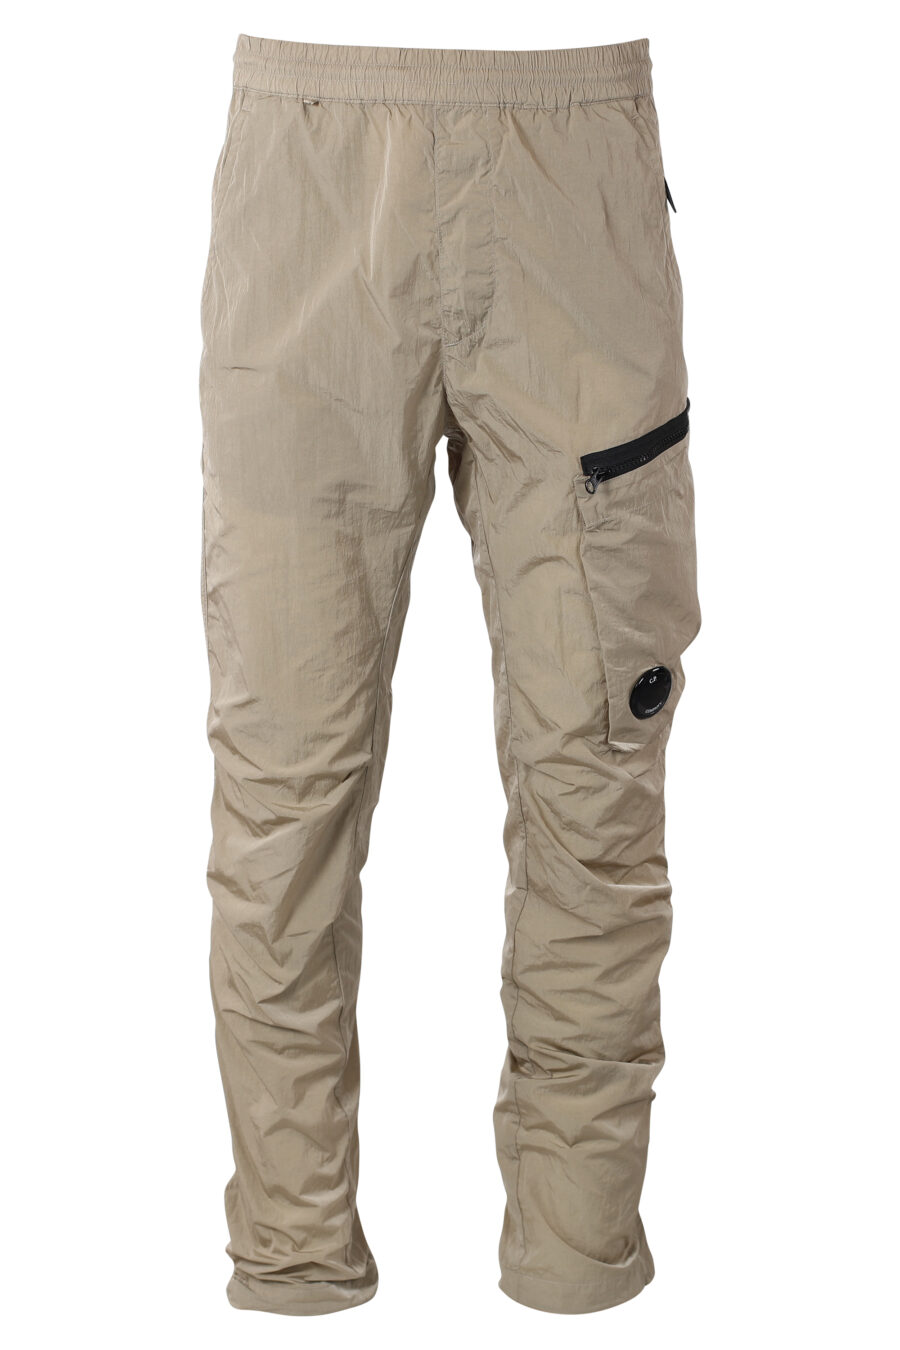 Pantalon beige avec poche latérale diagonale et mini-logo circulaire - IMG 9936